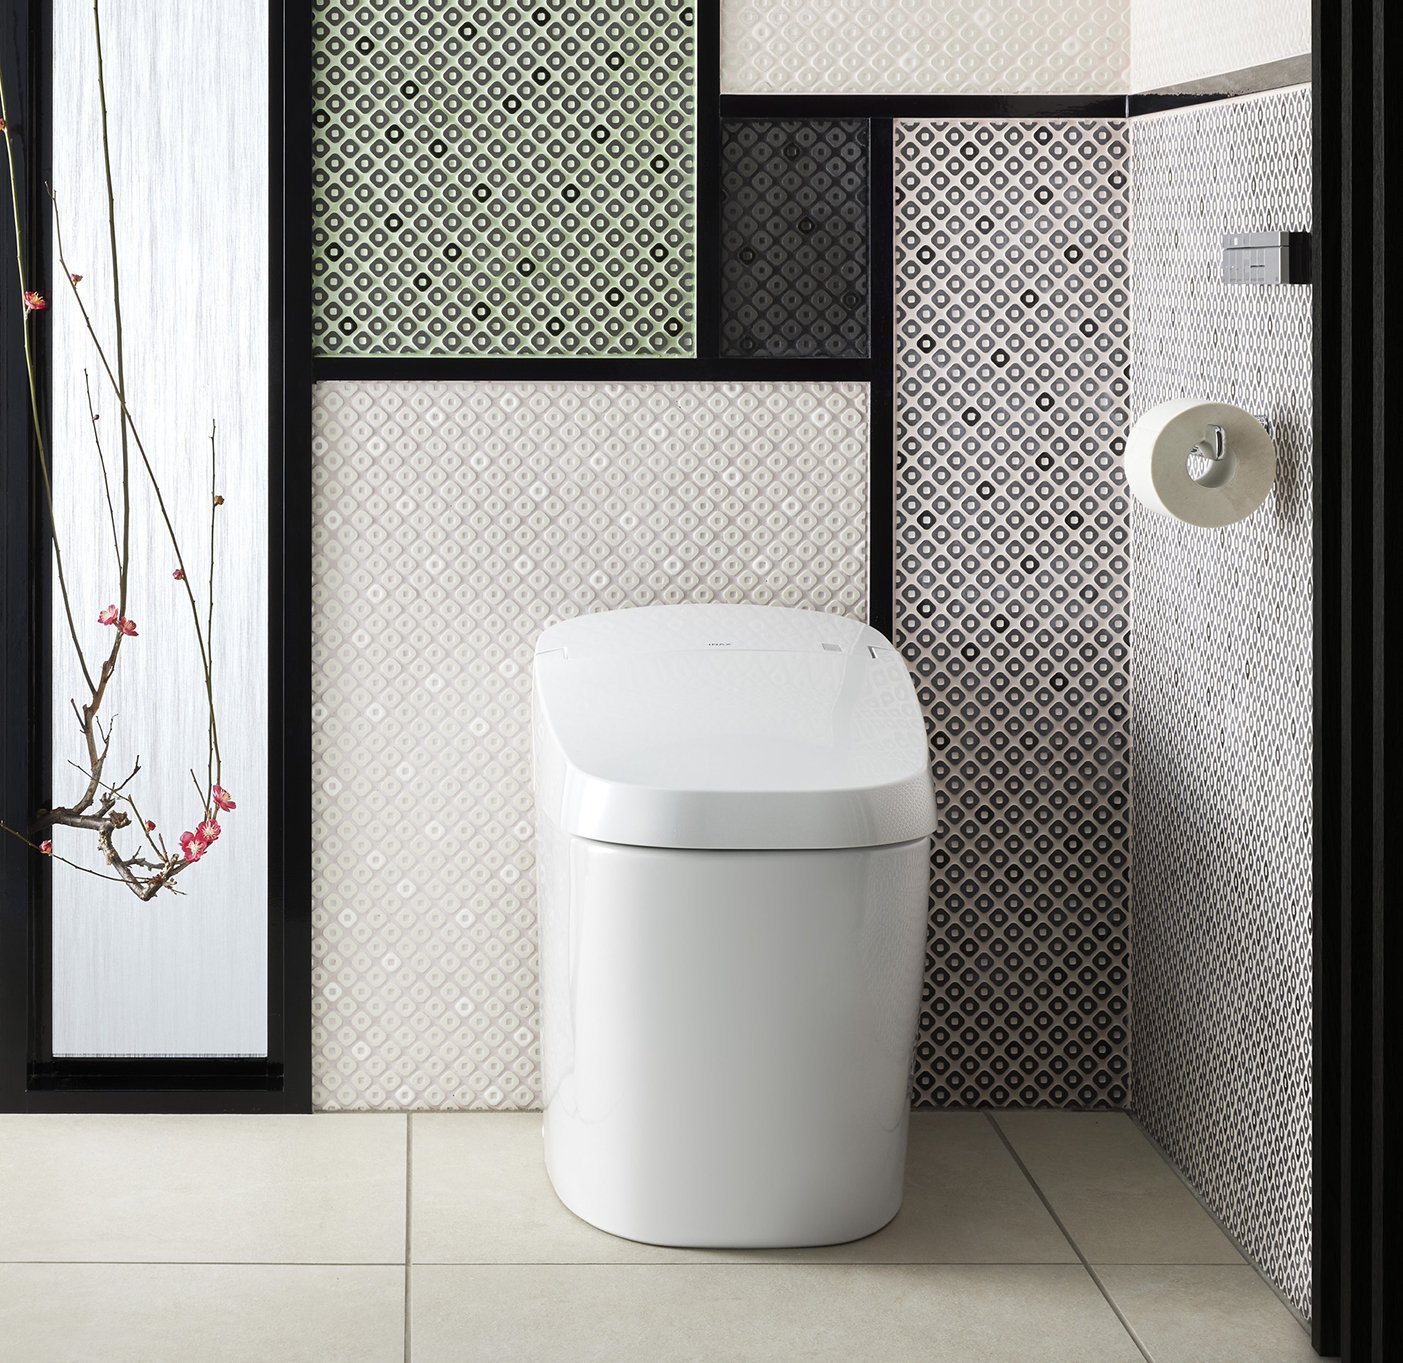 Rèm phòng tắm Sani giúp tạo không gian riêng tư và tiện nghi cho phòng tắm của bạn. Với chất liệu cao cấp và thiết kế sang trọng, rèm Sani không chỉ bảo vệ sự riêng tư mà còn trang trí phòng tắm thêm đẹp và độc đáo.